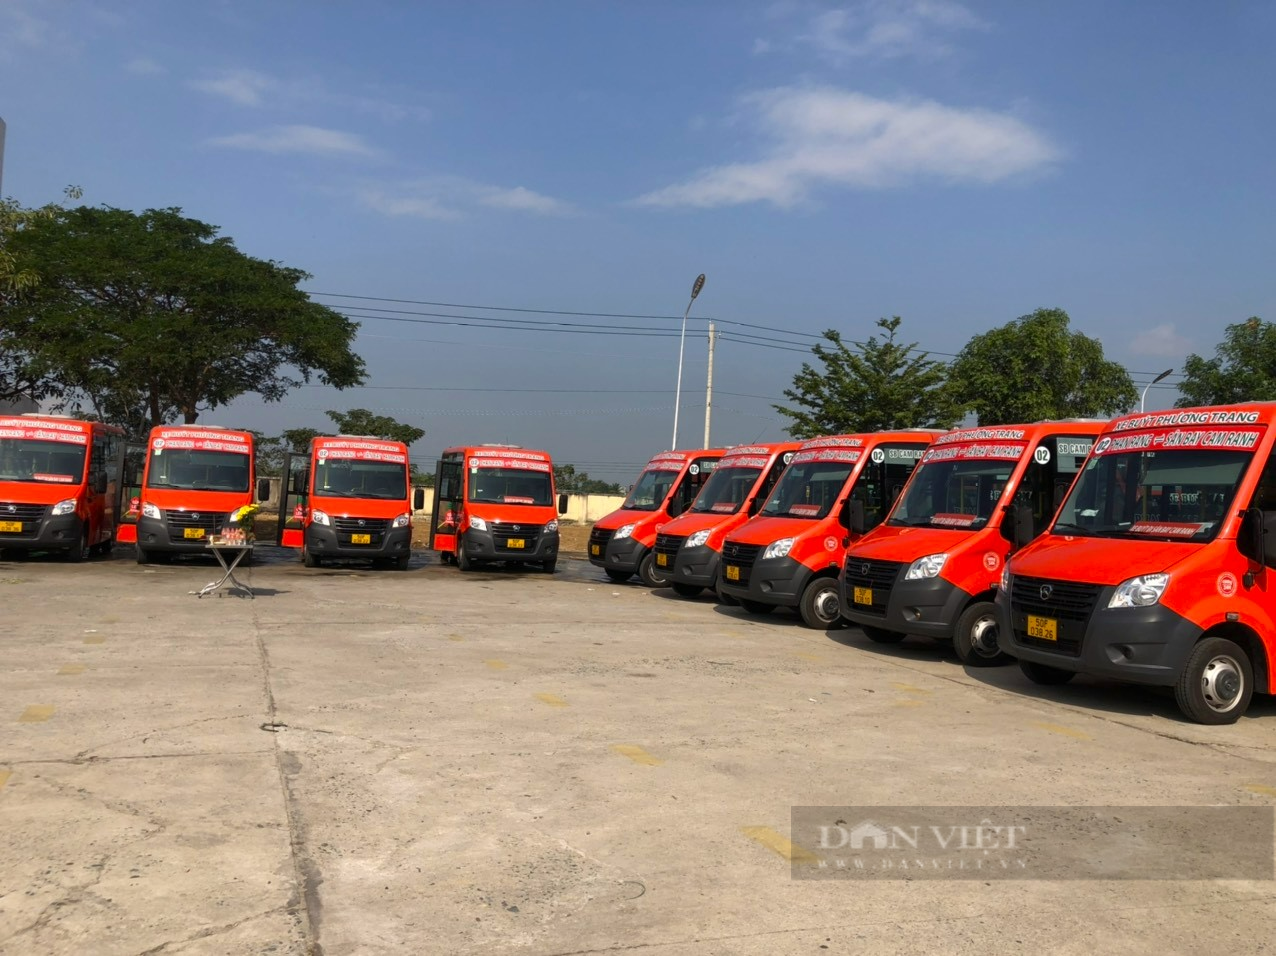 Chính thức đưa vào hoạt động 2 tuyến xe buýt liên tỉnh kết nối Ninh Thuận với Bình Thuận và Khánh Hòa - Ảnh 1.